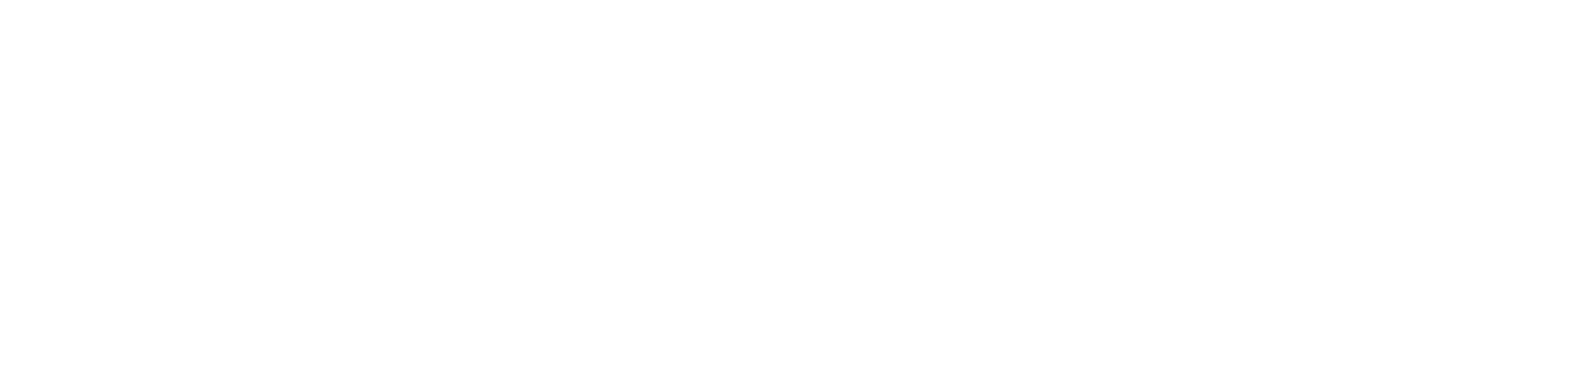 つながる。DX推進フレームワーク ジームクラウド Digital Transformation for Enterprise